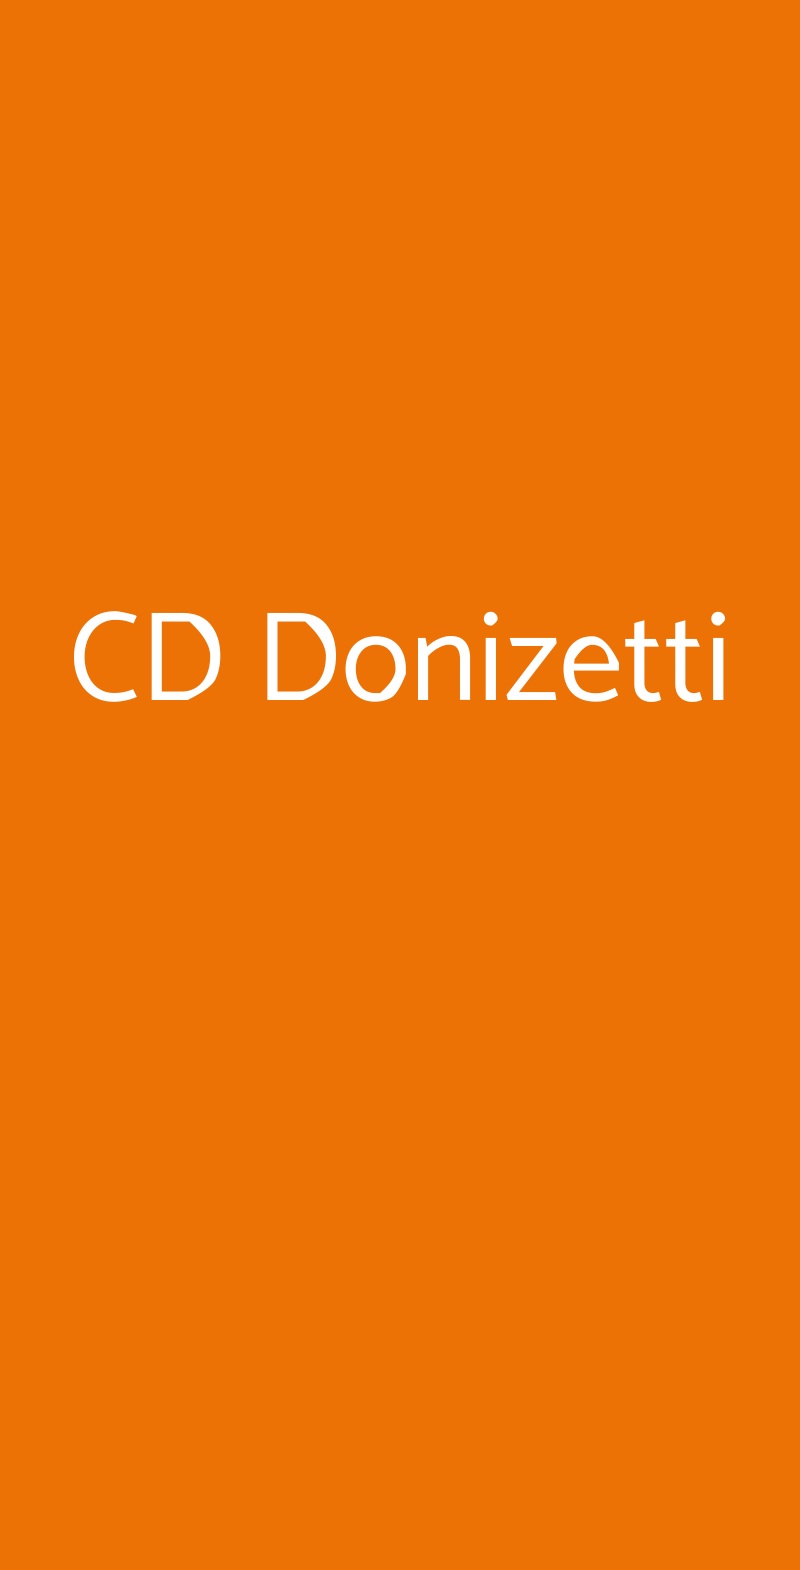 CD Donizetti Milano menù 1 pagina